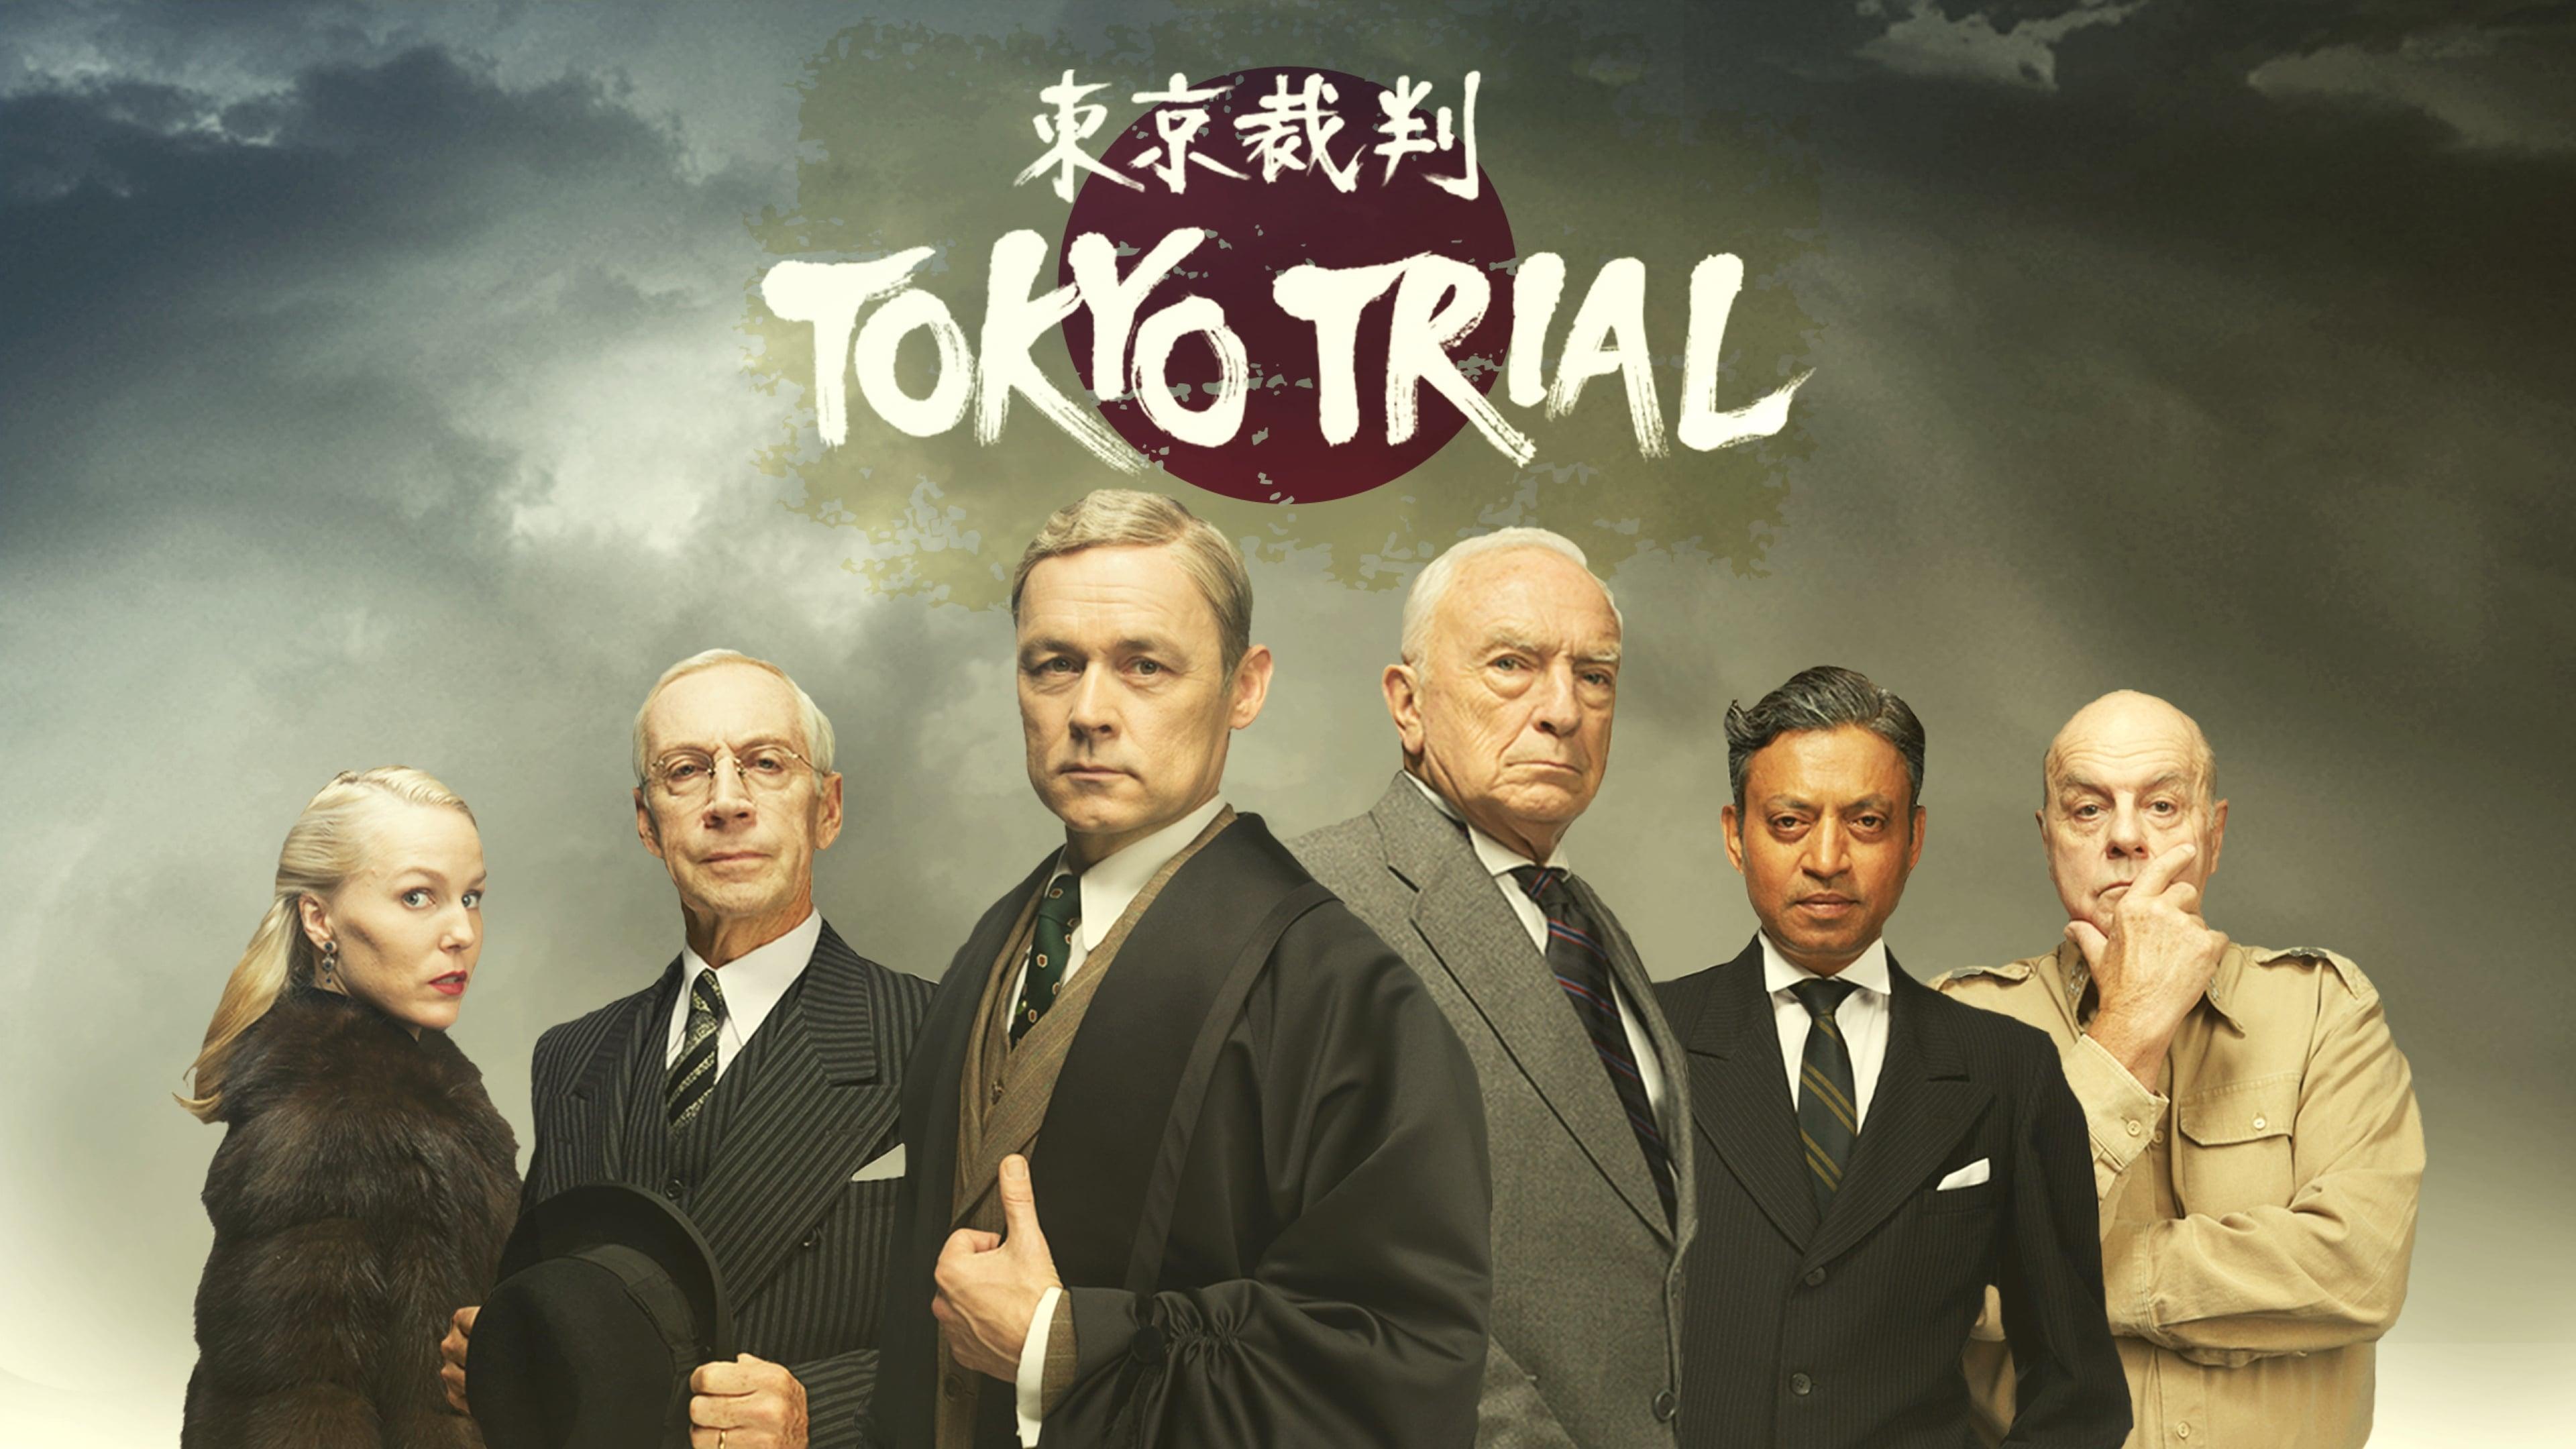 Tokyo Trial backdrop